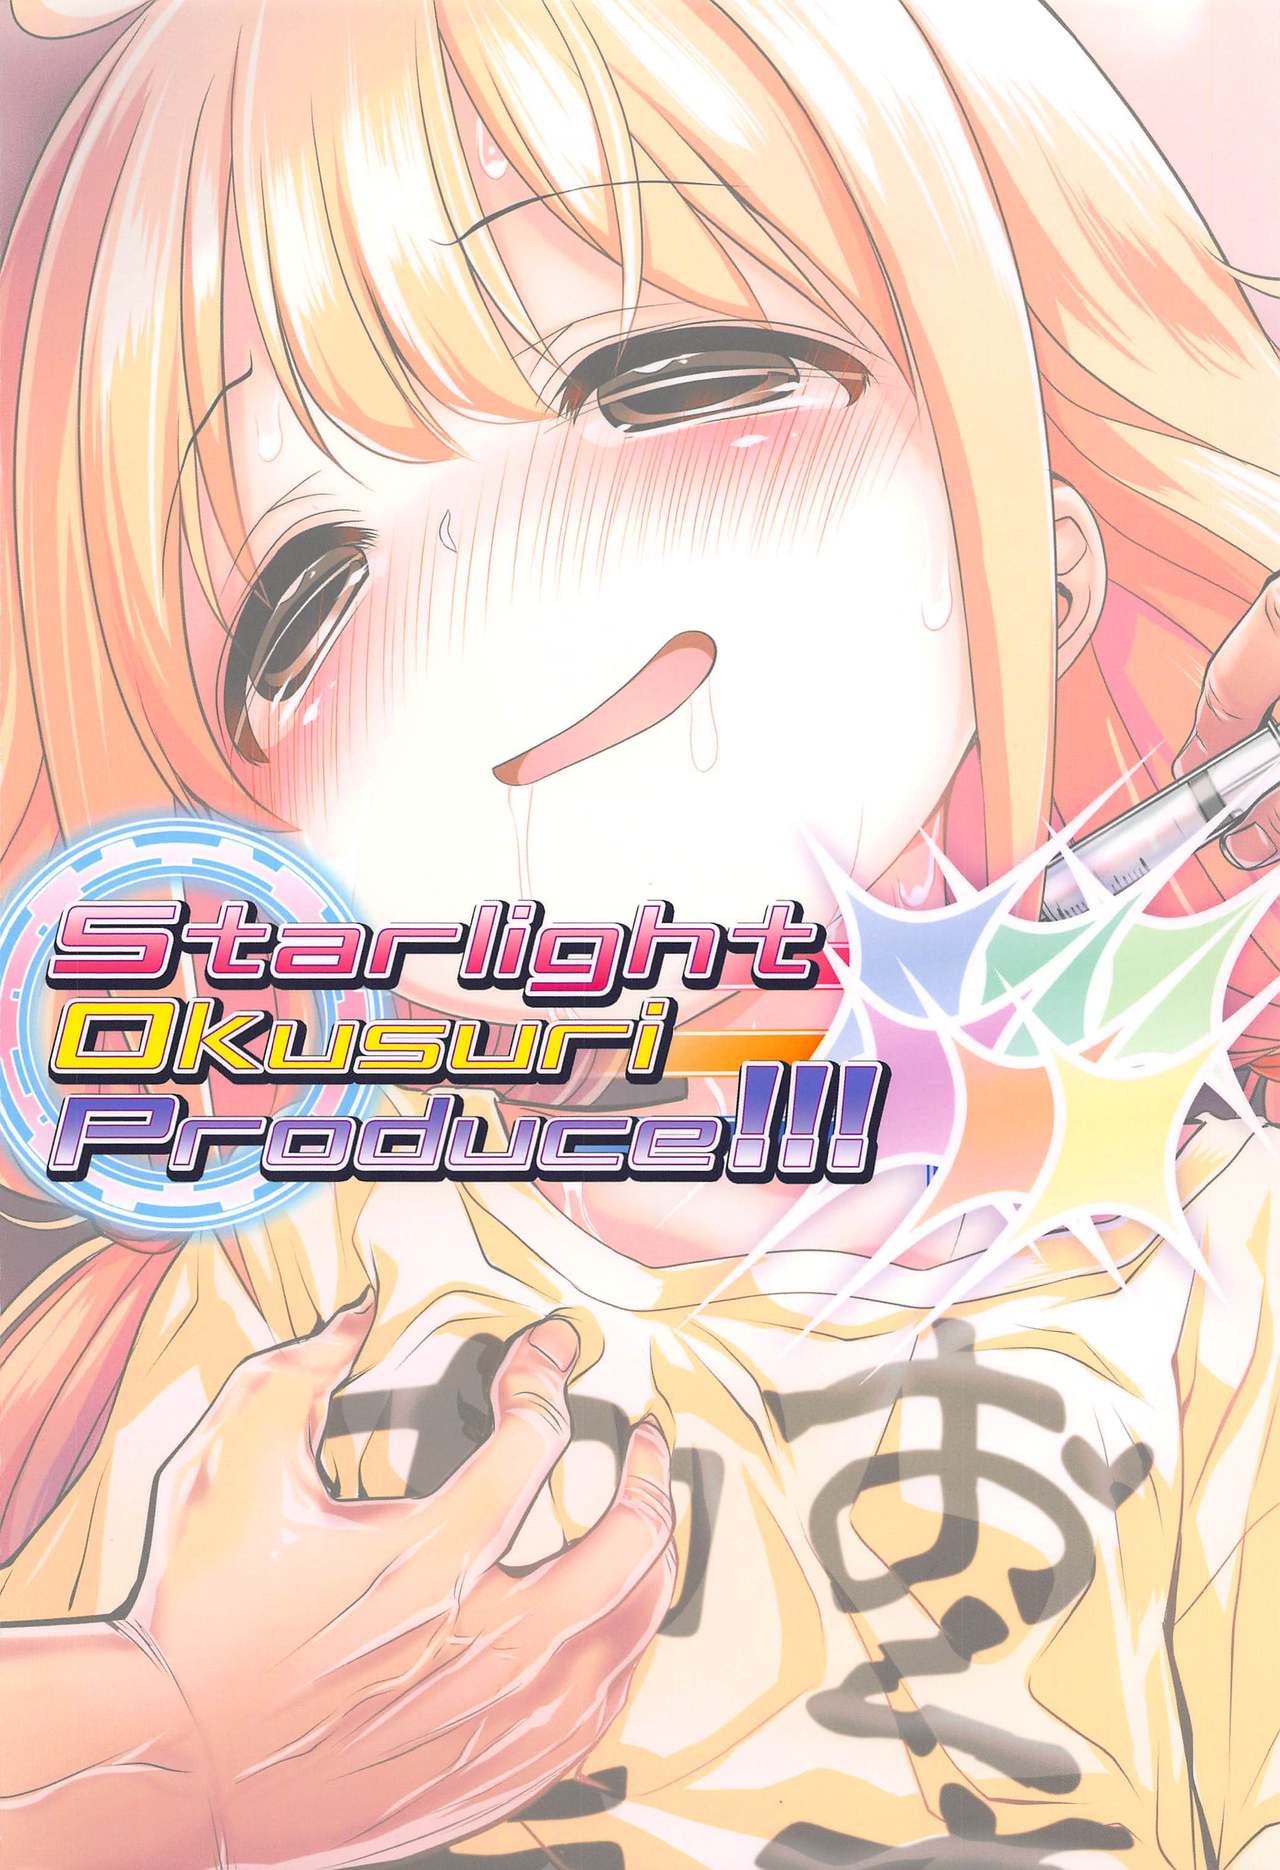 (歌姫庭園21) [ふらいぱん大魔王 (提灯暗光)] Starlight Okusuri Produce!!! XXXXXX (アイドルマスター シンデレラガールズ)